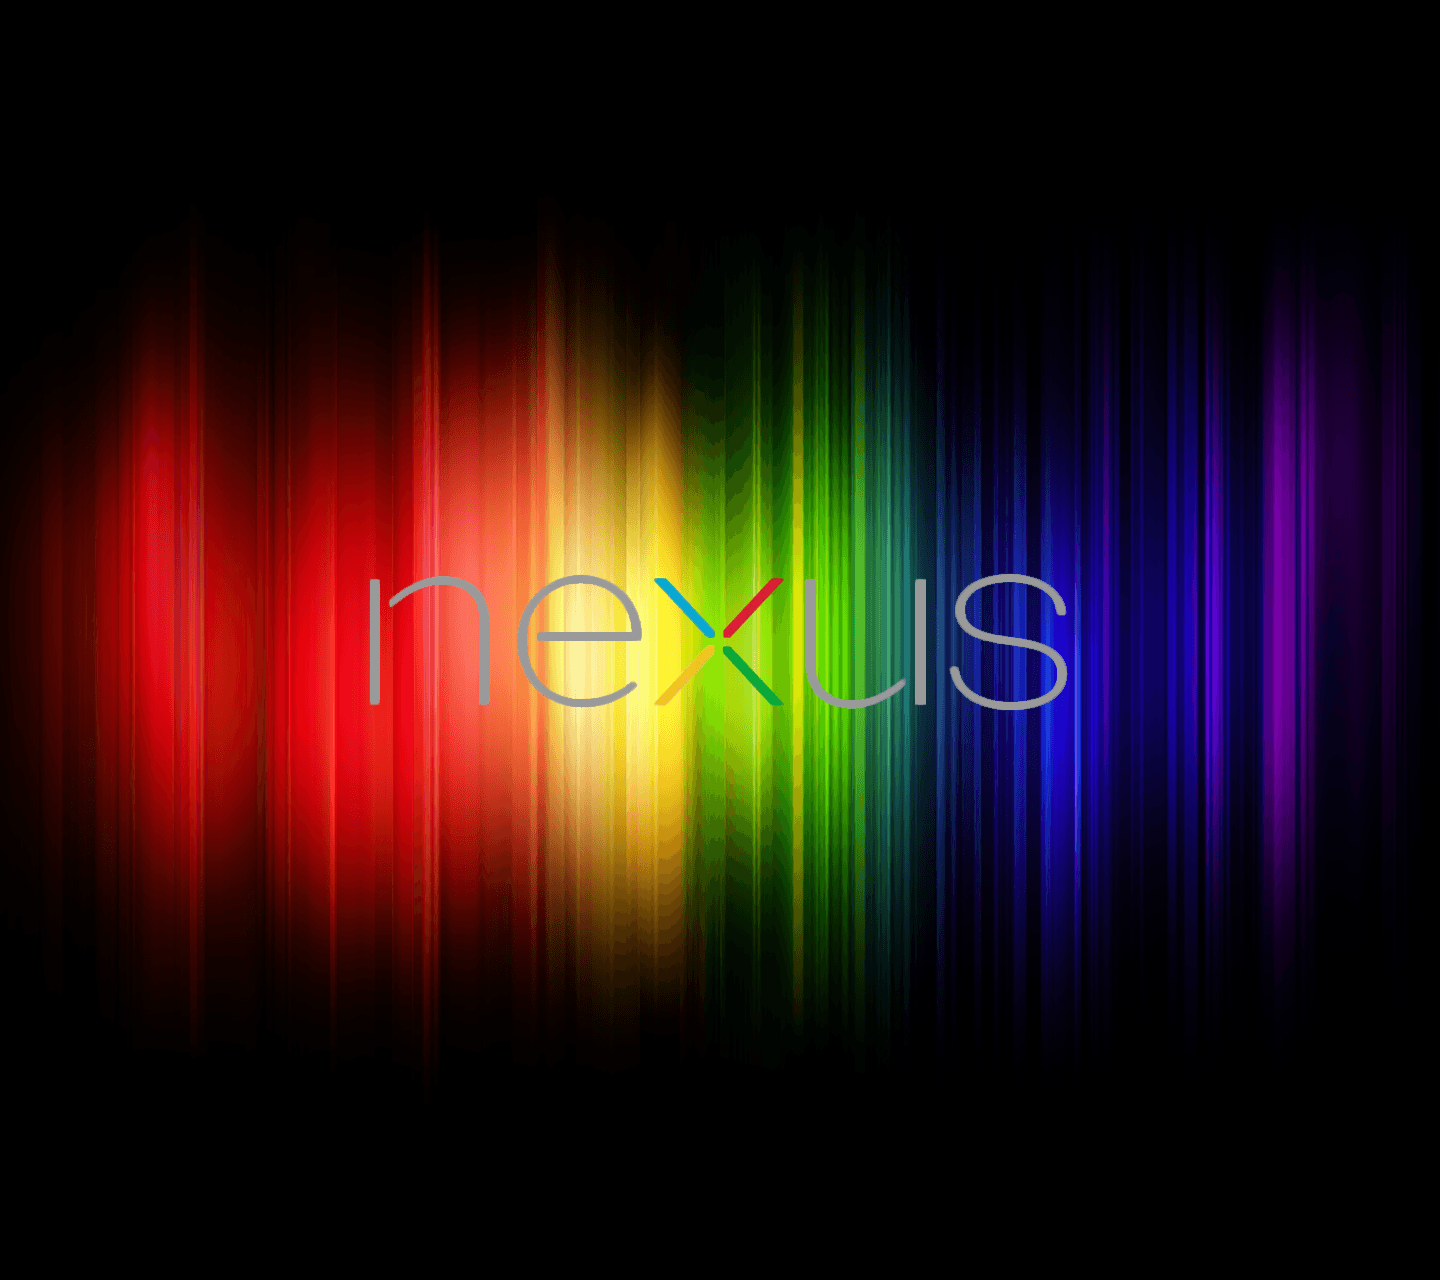 Nexus 4 Wallpapers - Wallpaper Cave